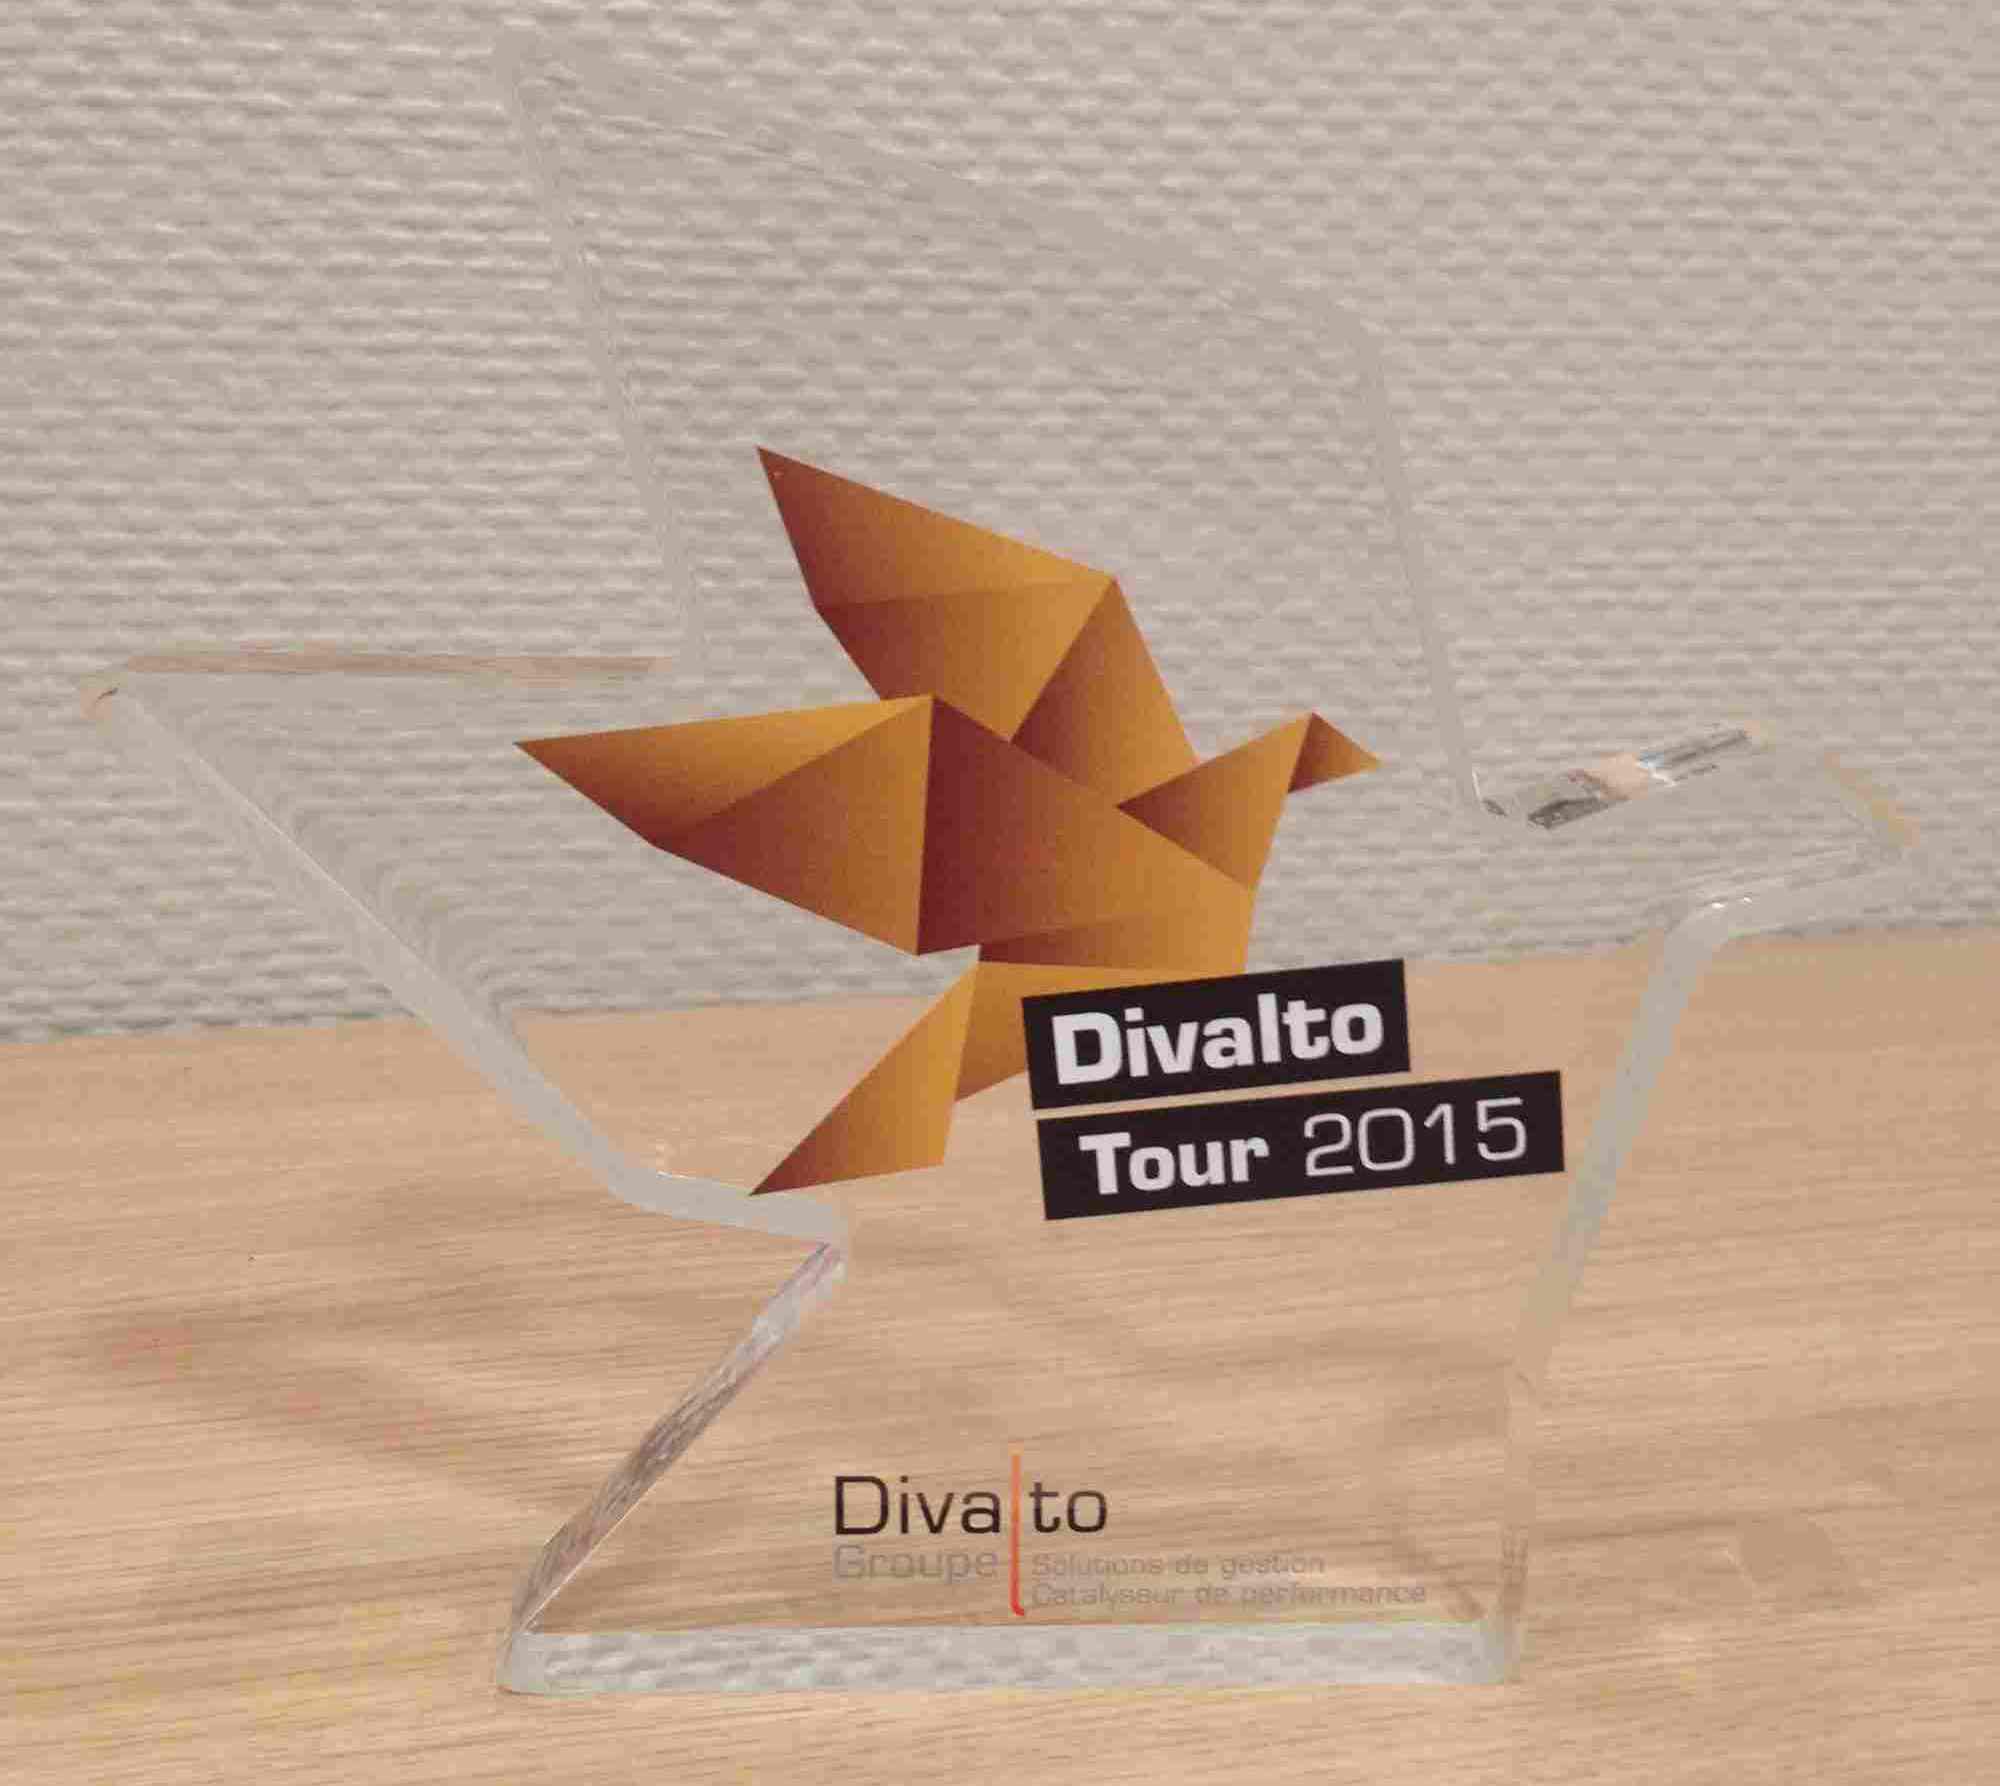 CIAG reçoit le trophée Divalto Tour 2015